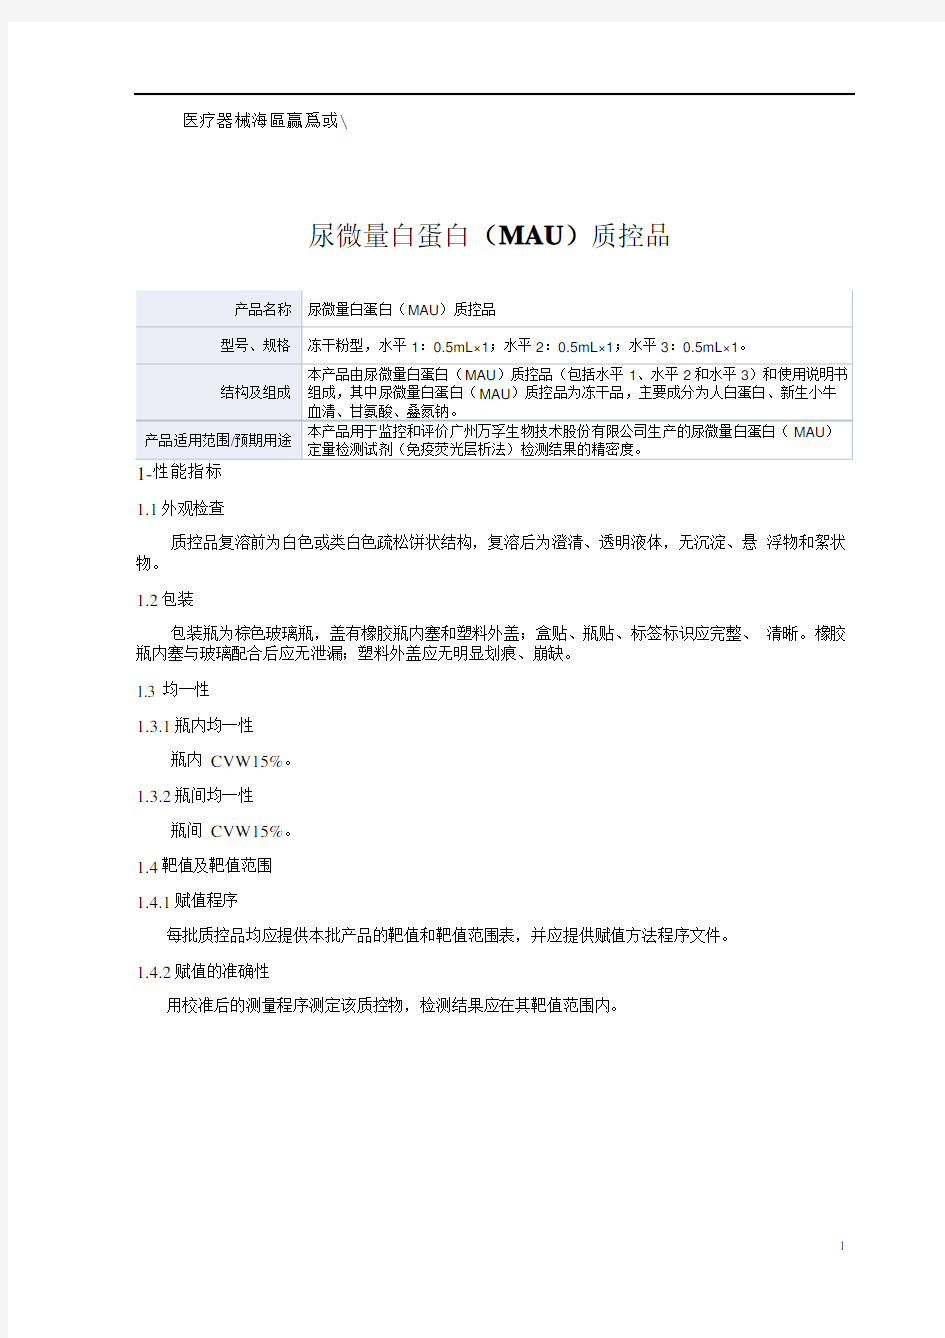 尿微量白蛋白(MAU)质控品产品技术要求广州万孚